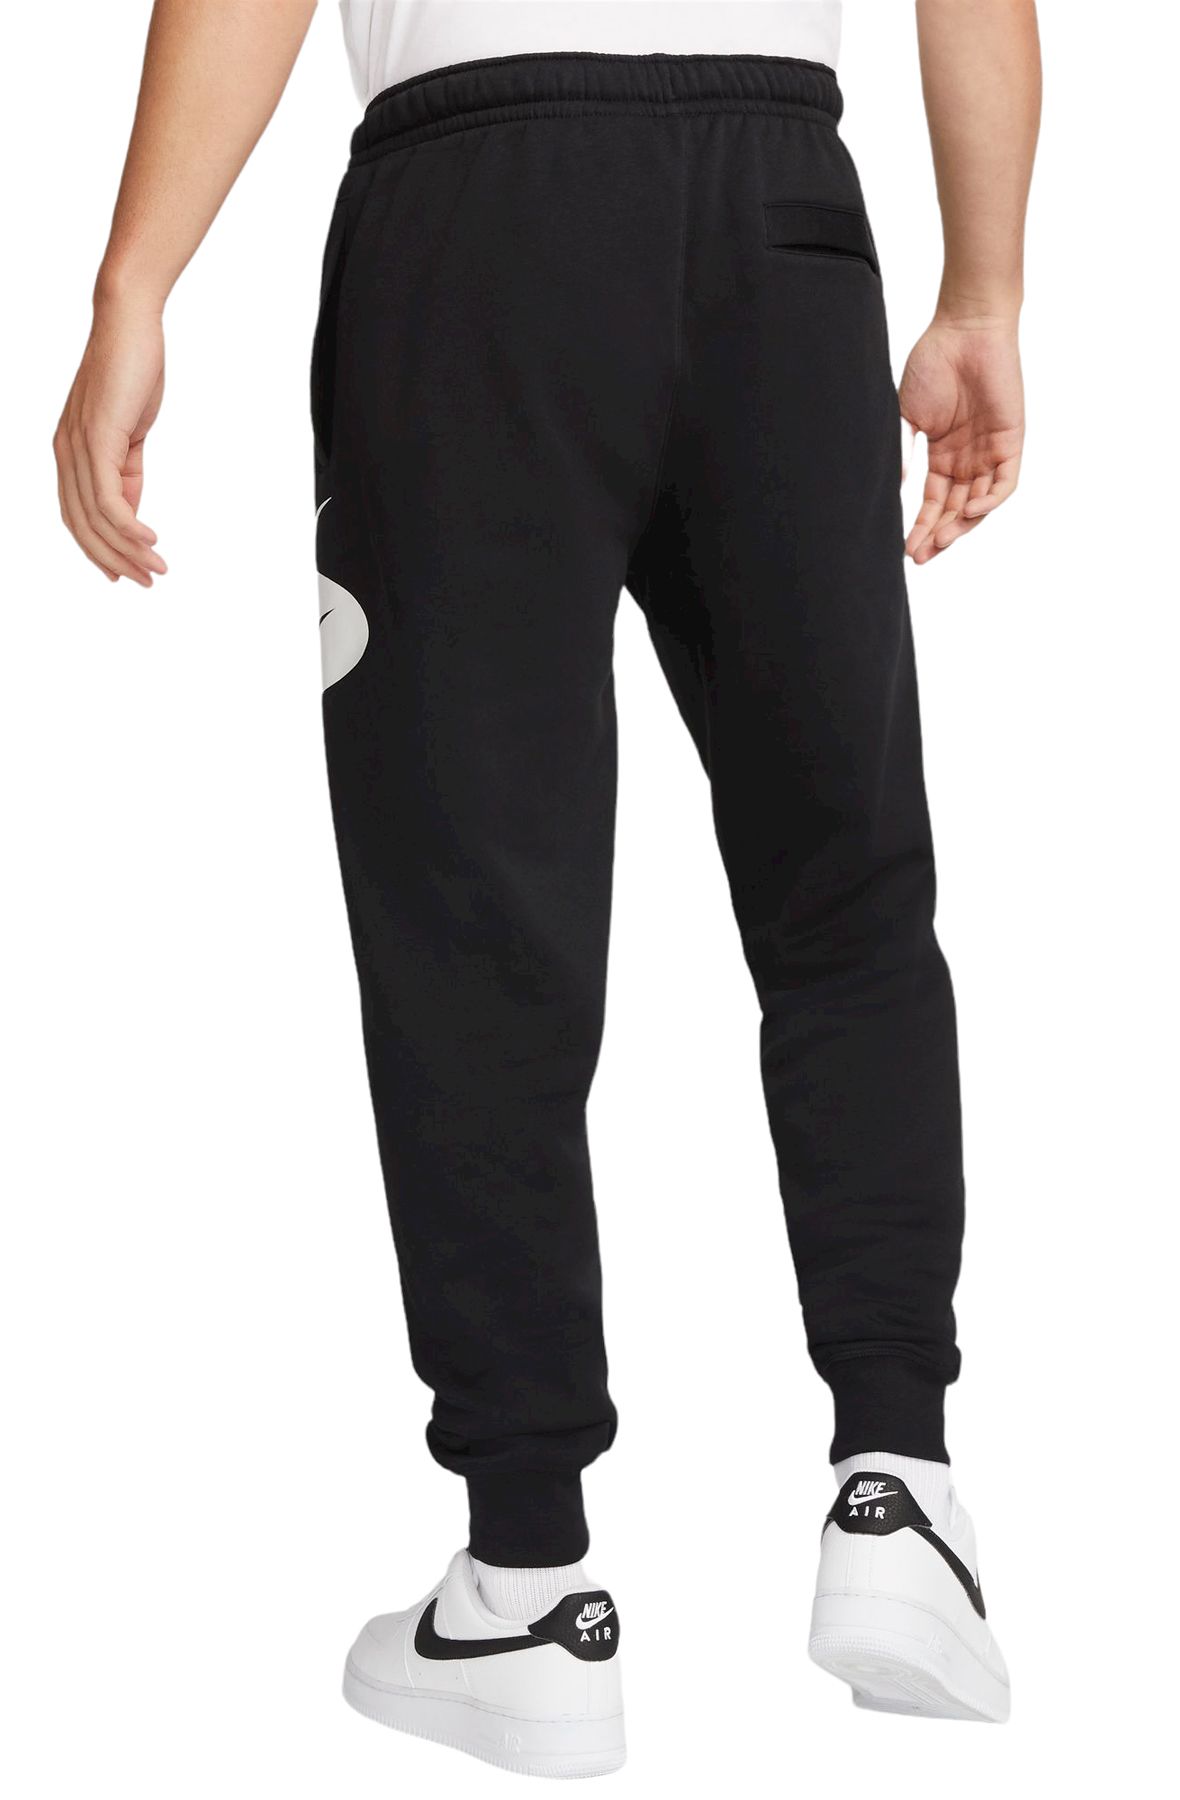 NIKE Sportswear Swoosh League Fleece Pants DM5467 010 - Shiekh